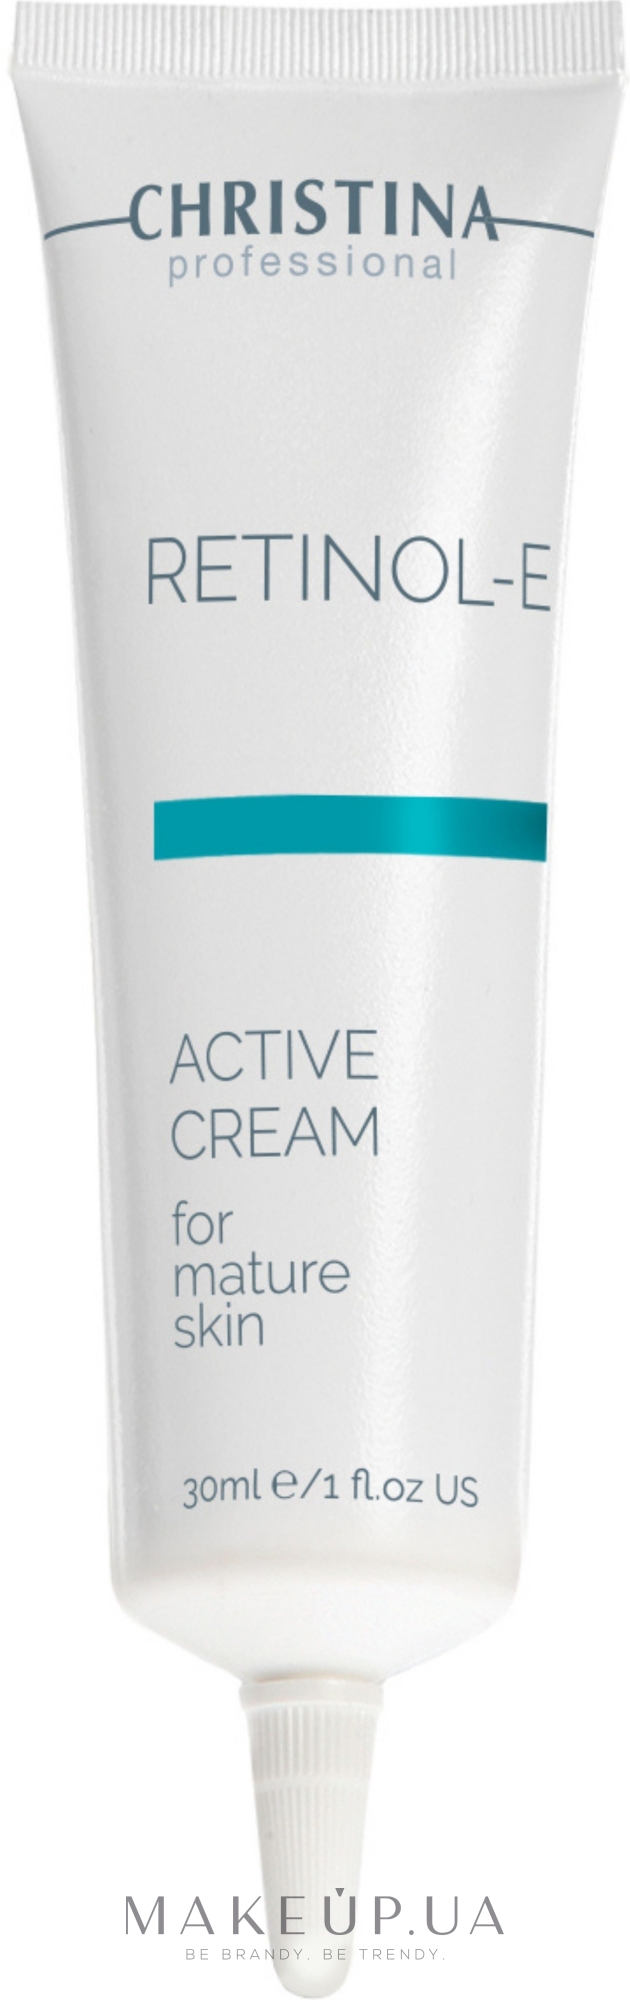 Активный крем для обновления и омоложения кожи лица - Christina Retinol E Active Cream — фото 30ml